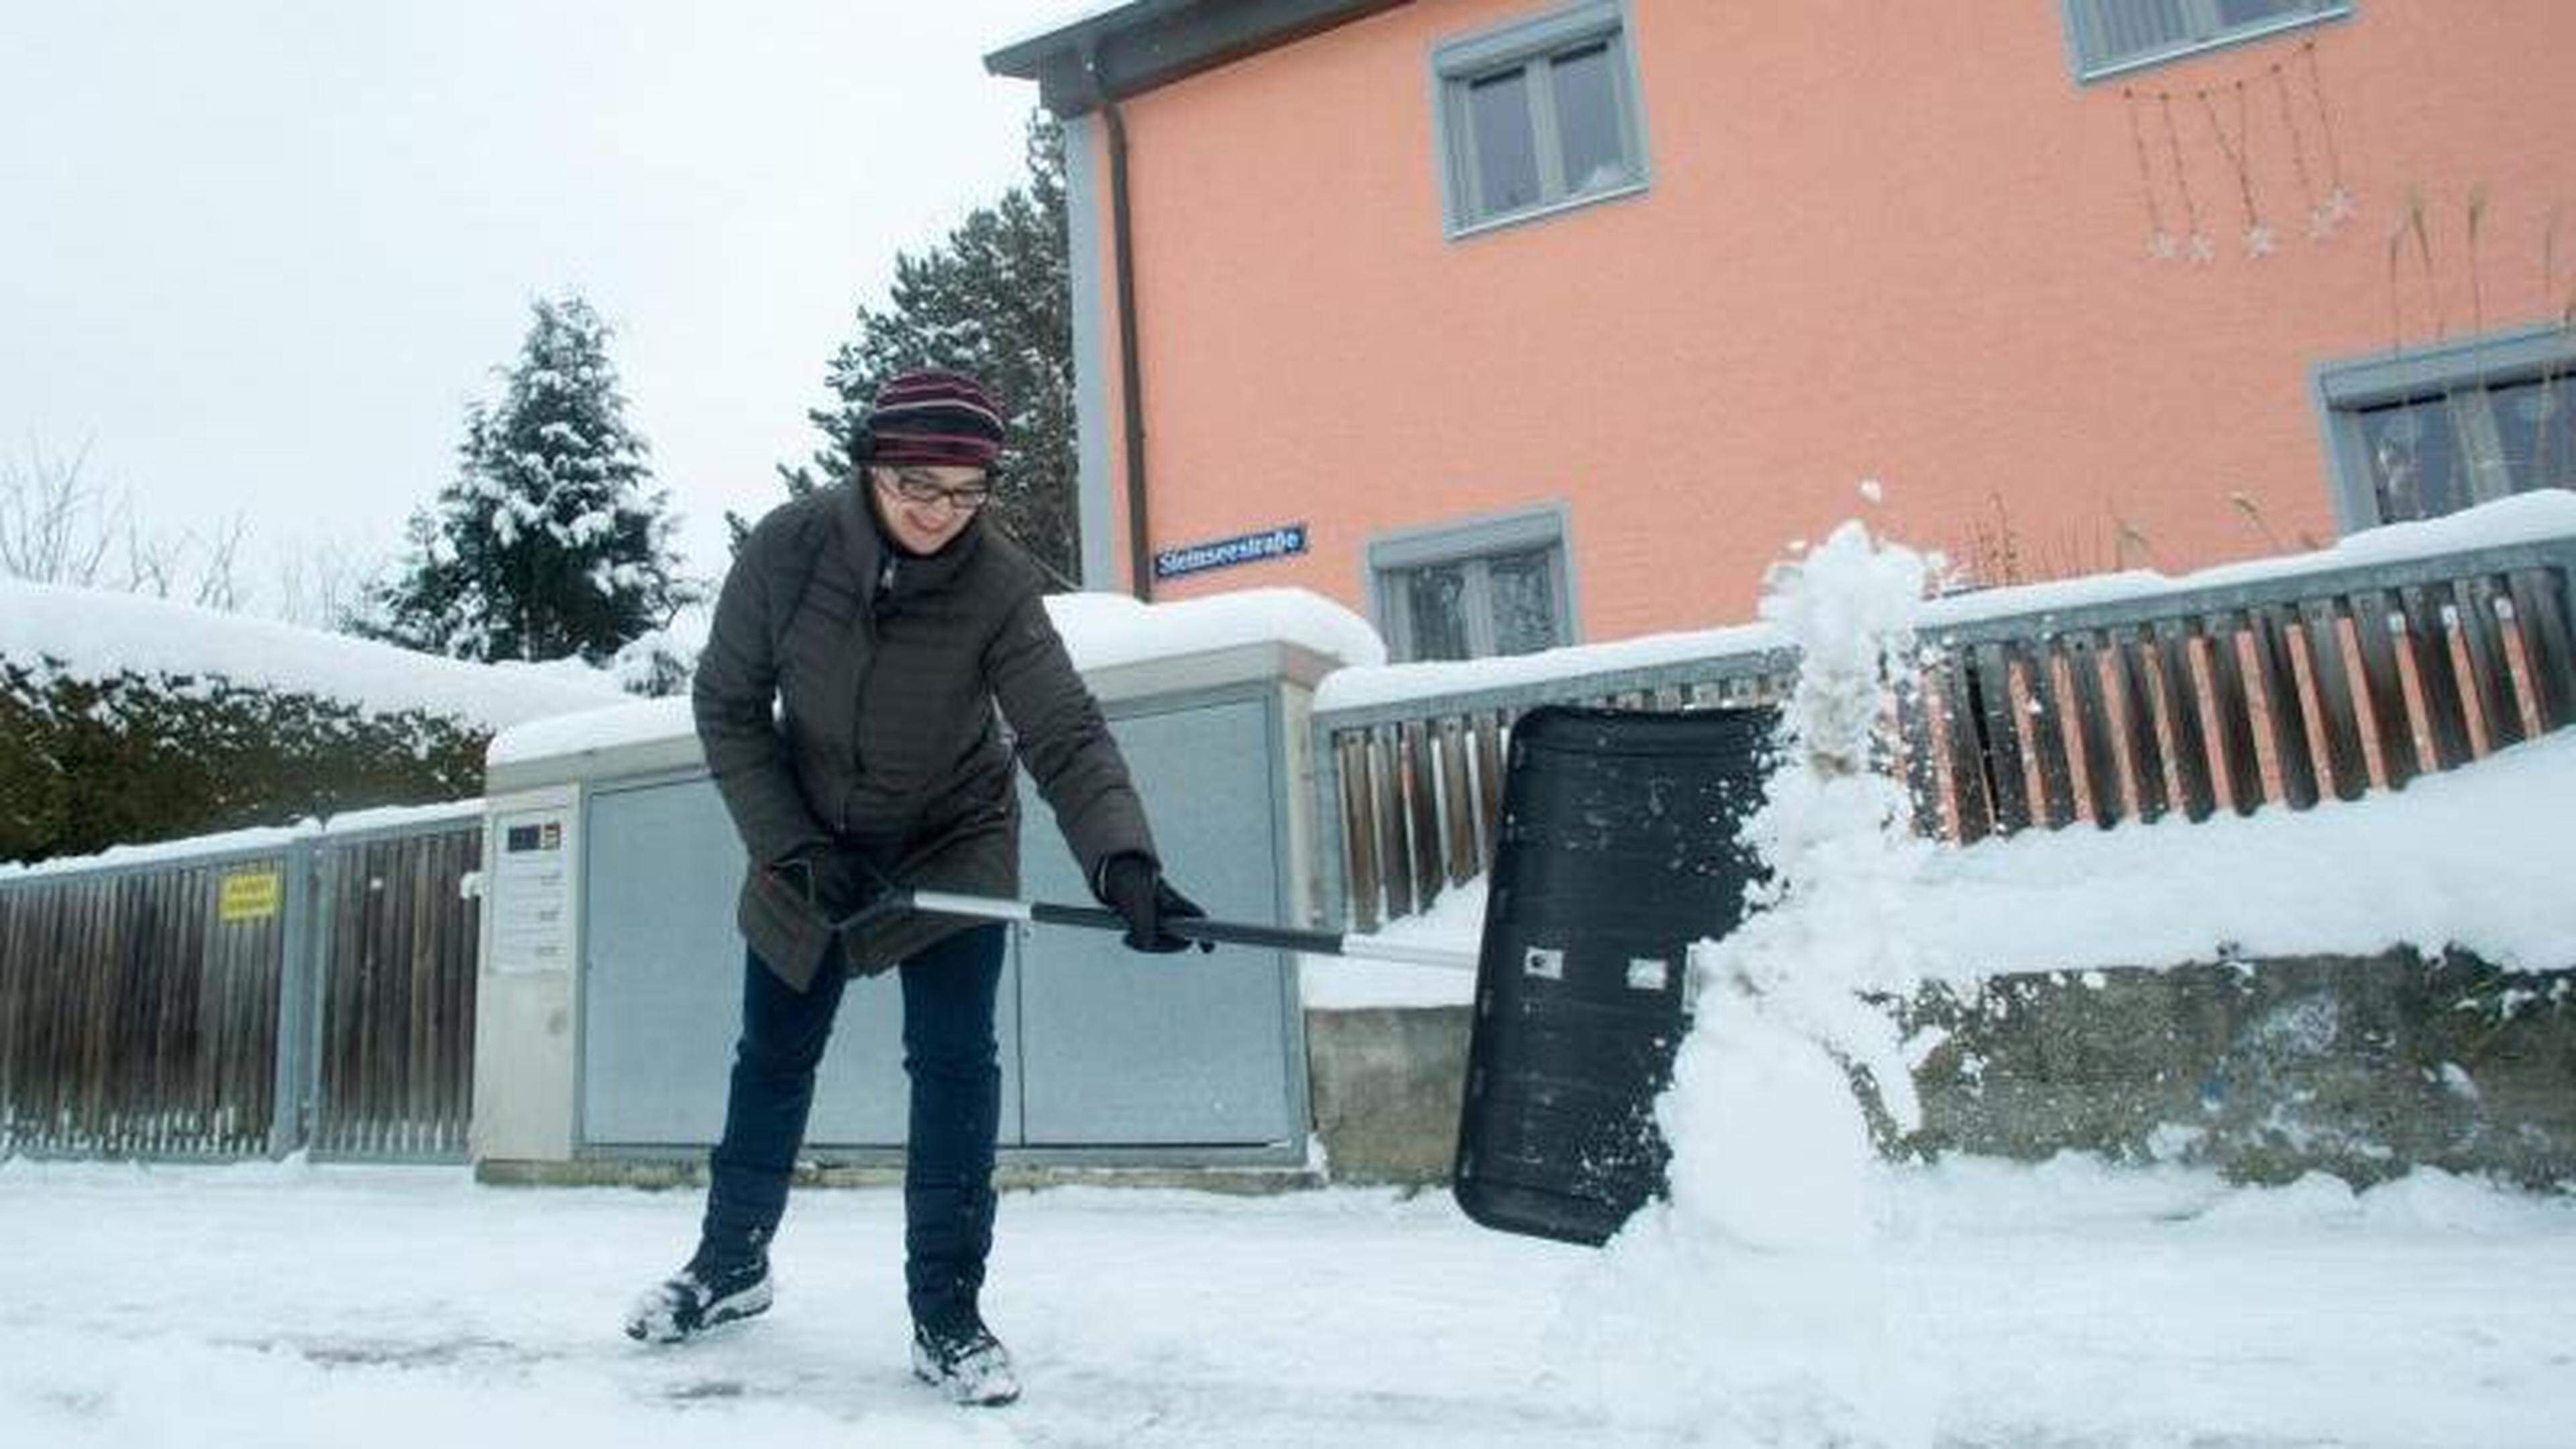 Tipps zu Schneeschaufeln und Streugut